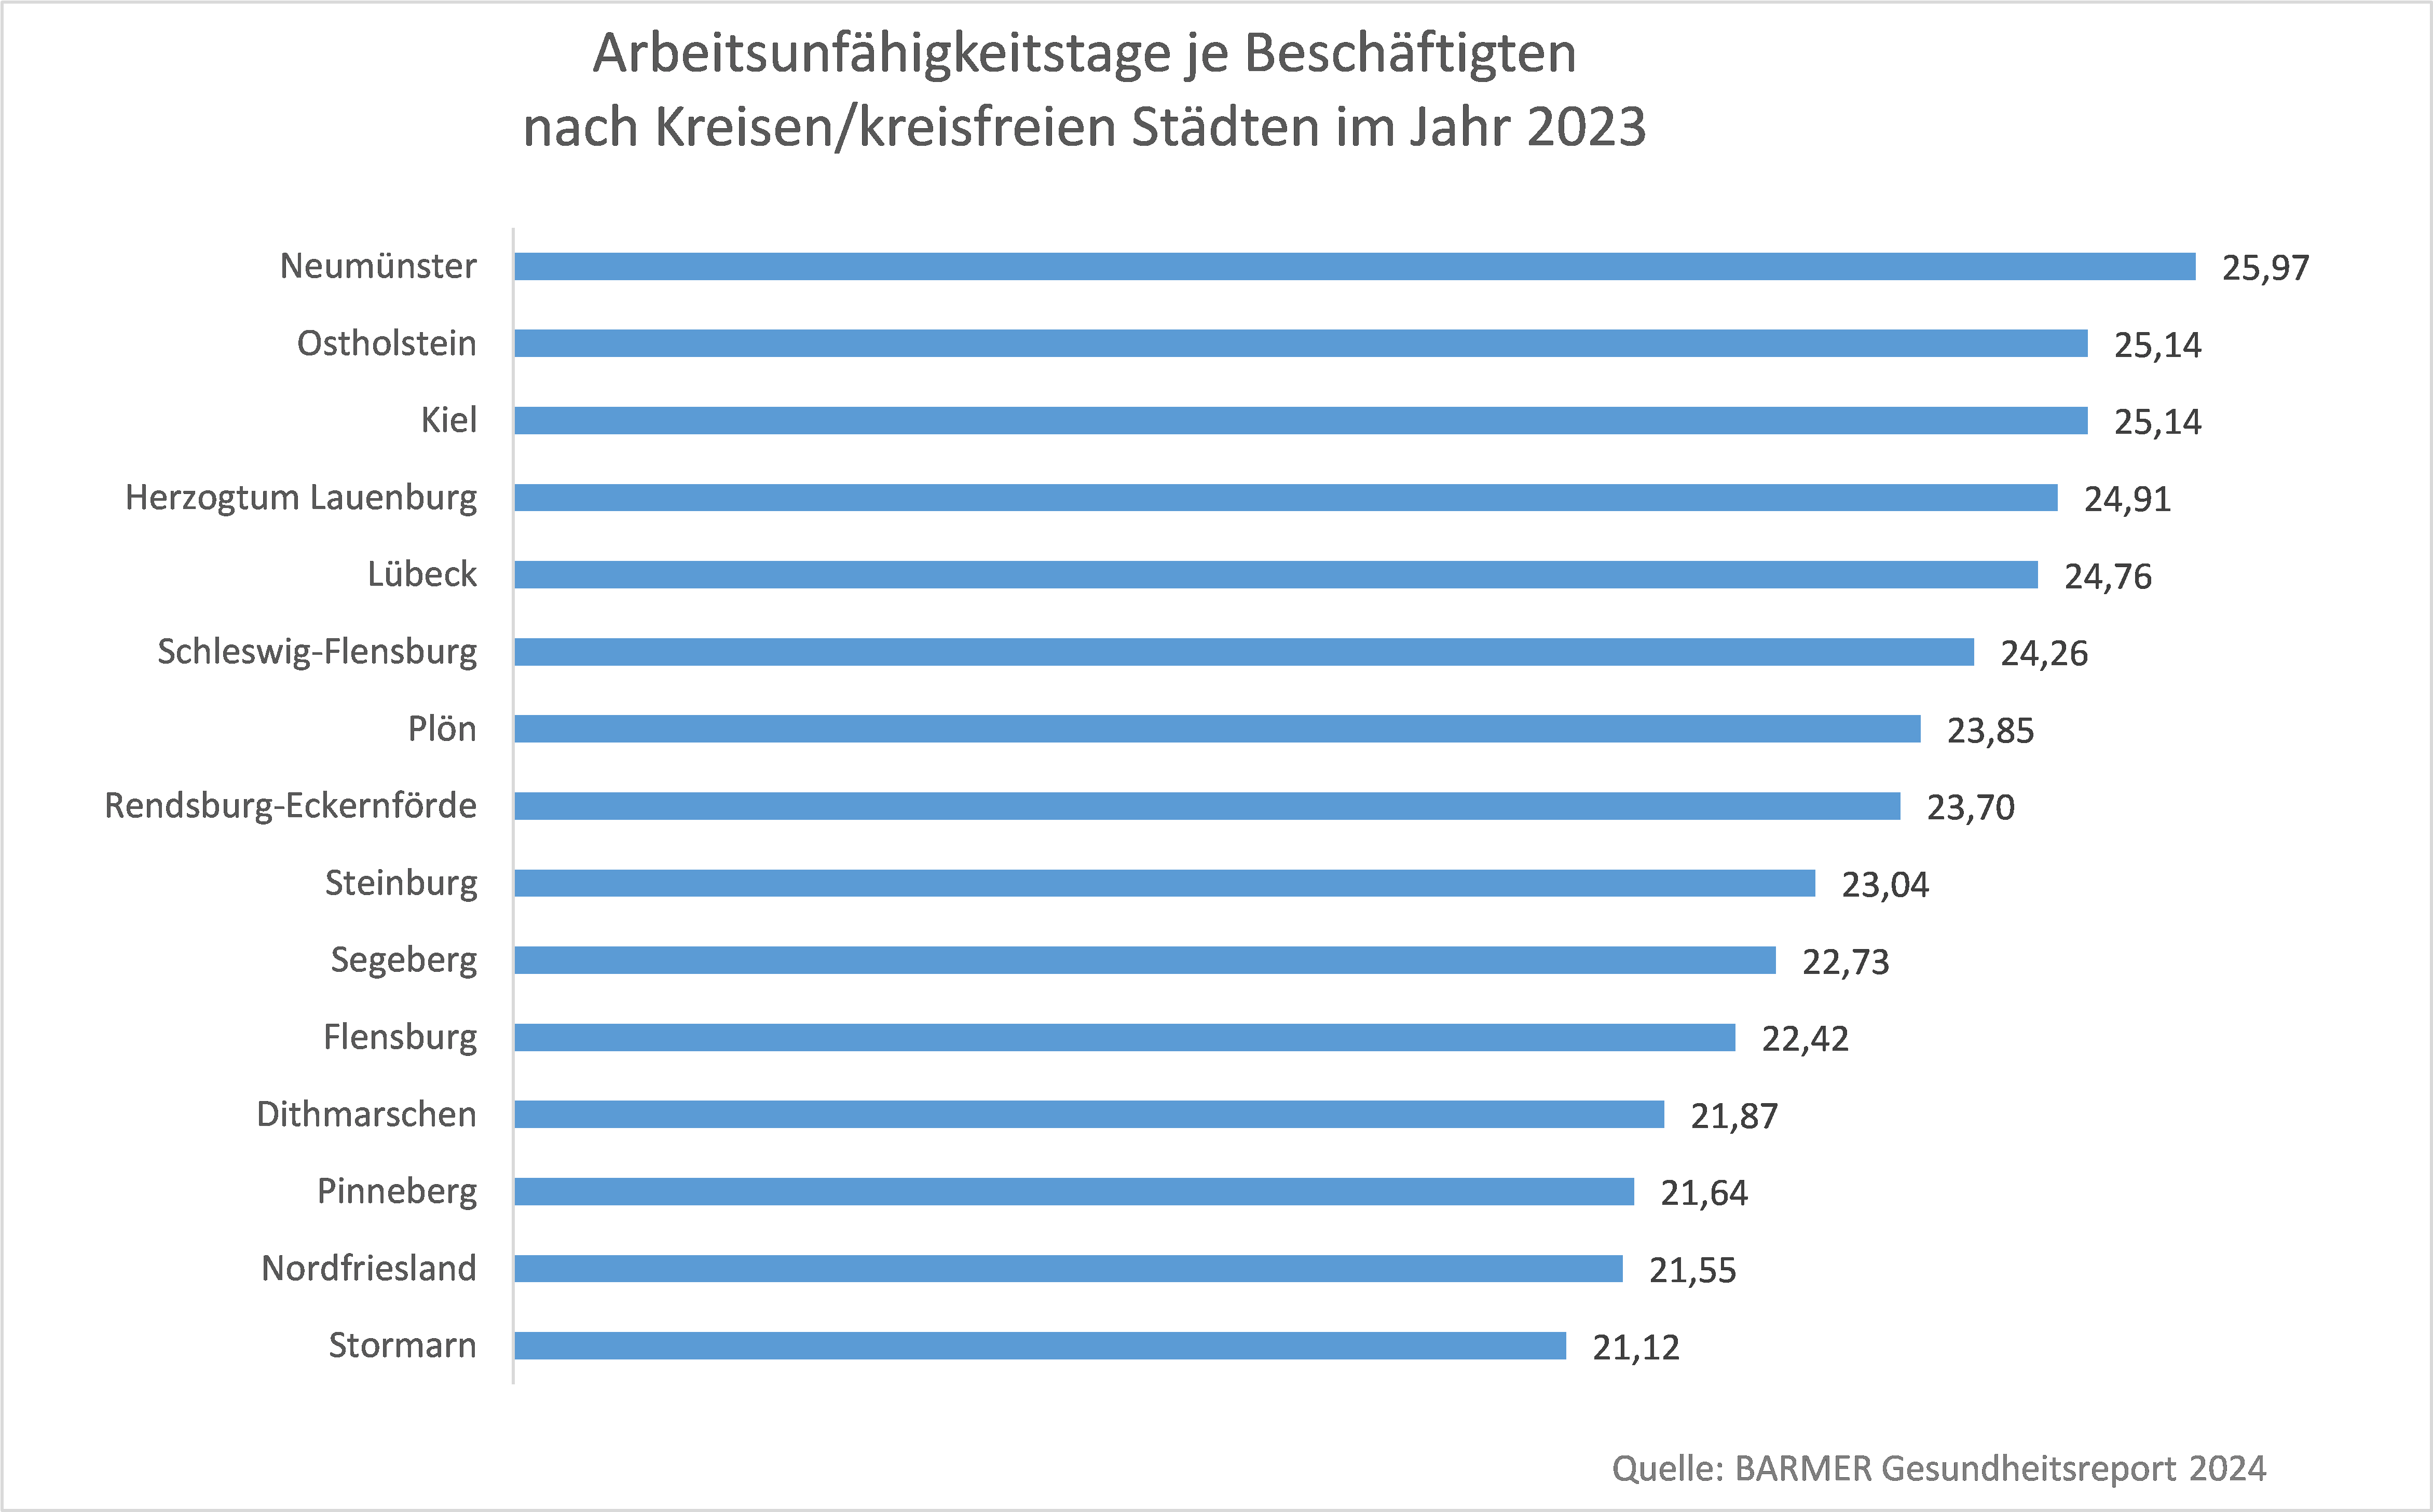 Arbeitsunfähigkeitstage je Beschäftigten nach Kreisen/kreisfreien Städten in Schleswig-Holstein im Jahr 2023